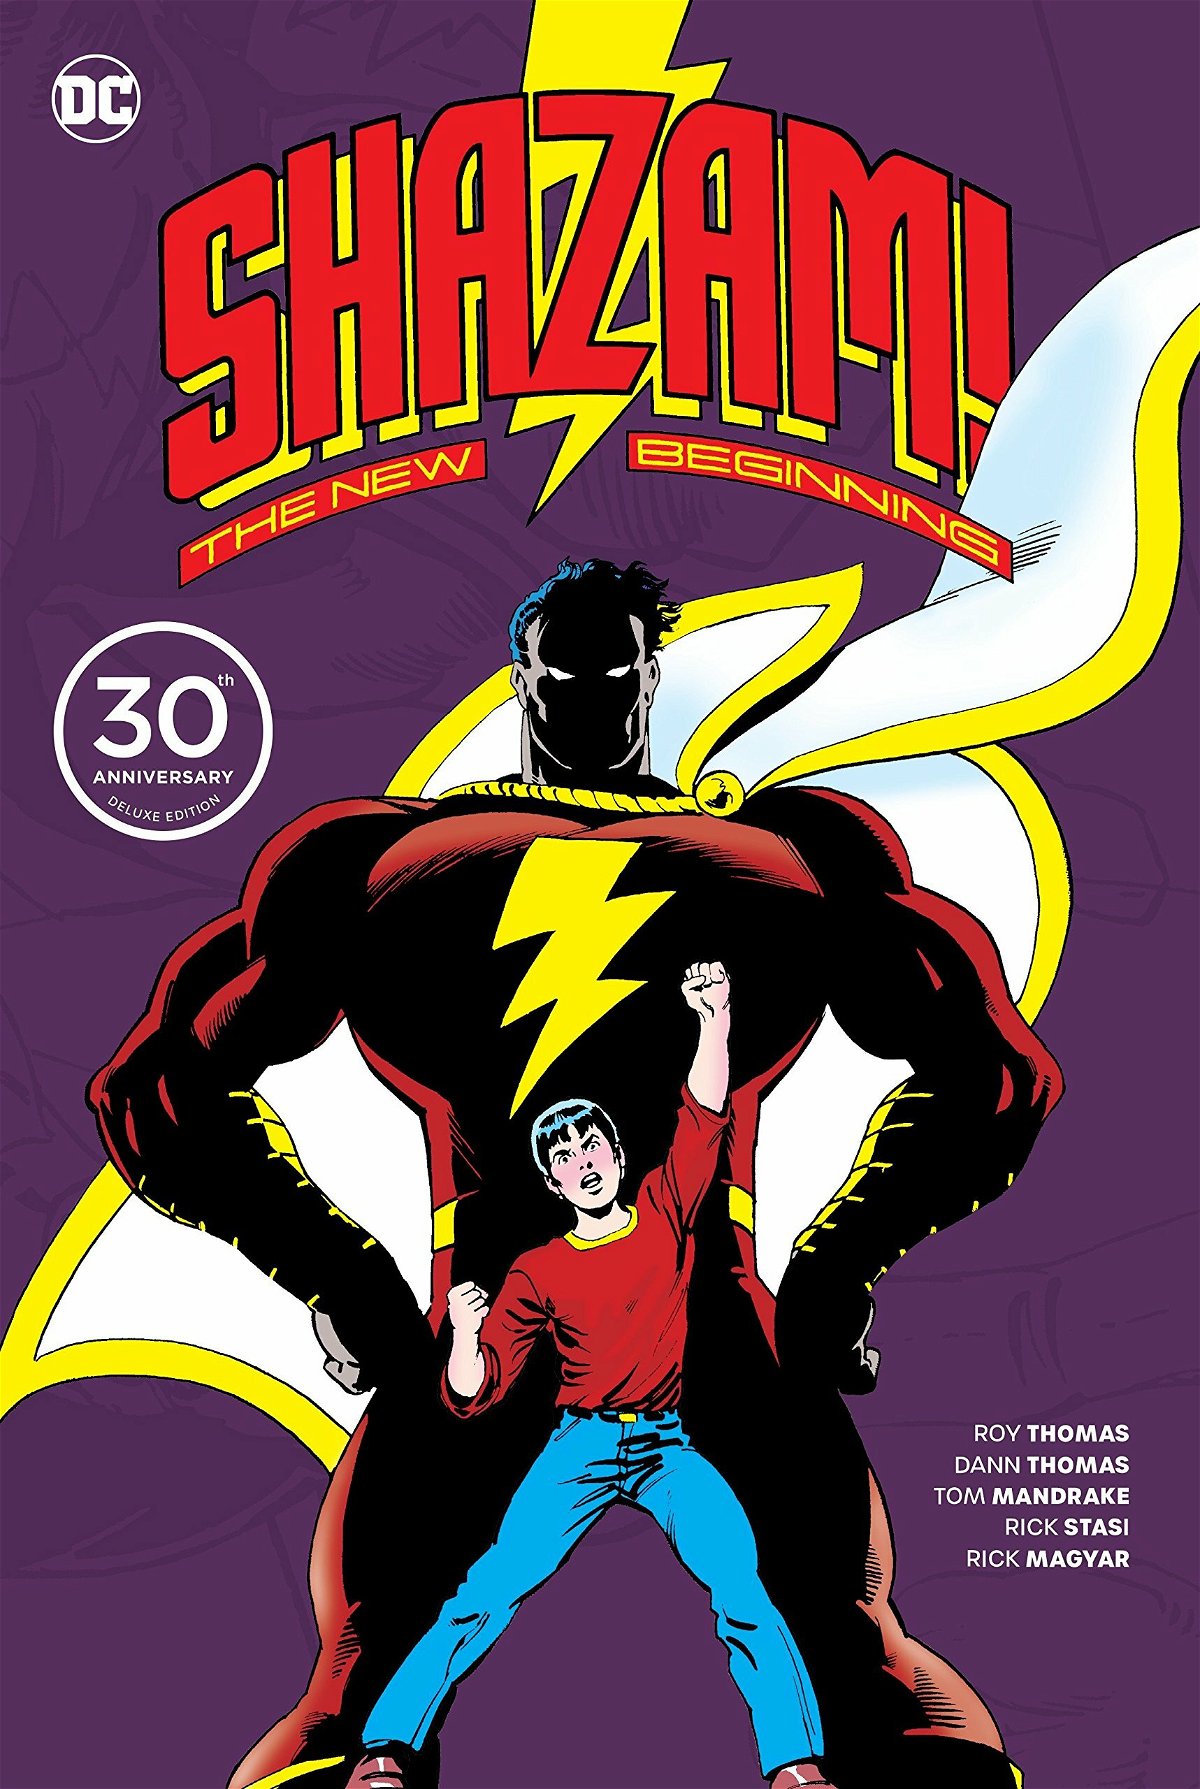 Copertina del volume celebrativo del 30esimo anniversario della miniserie Shazam: The new Beginning